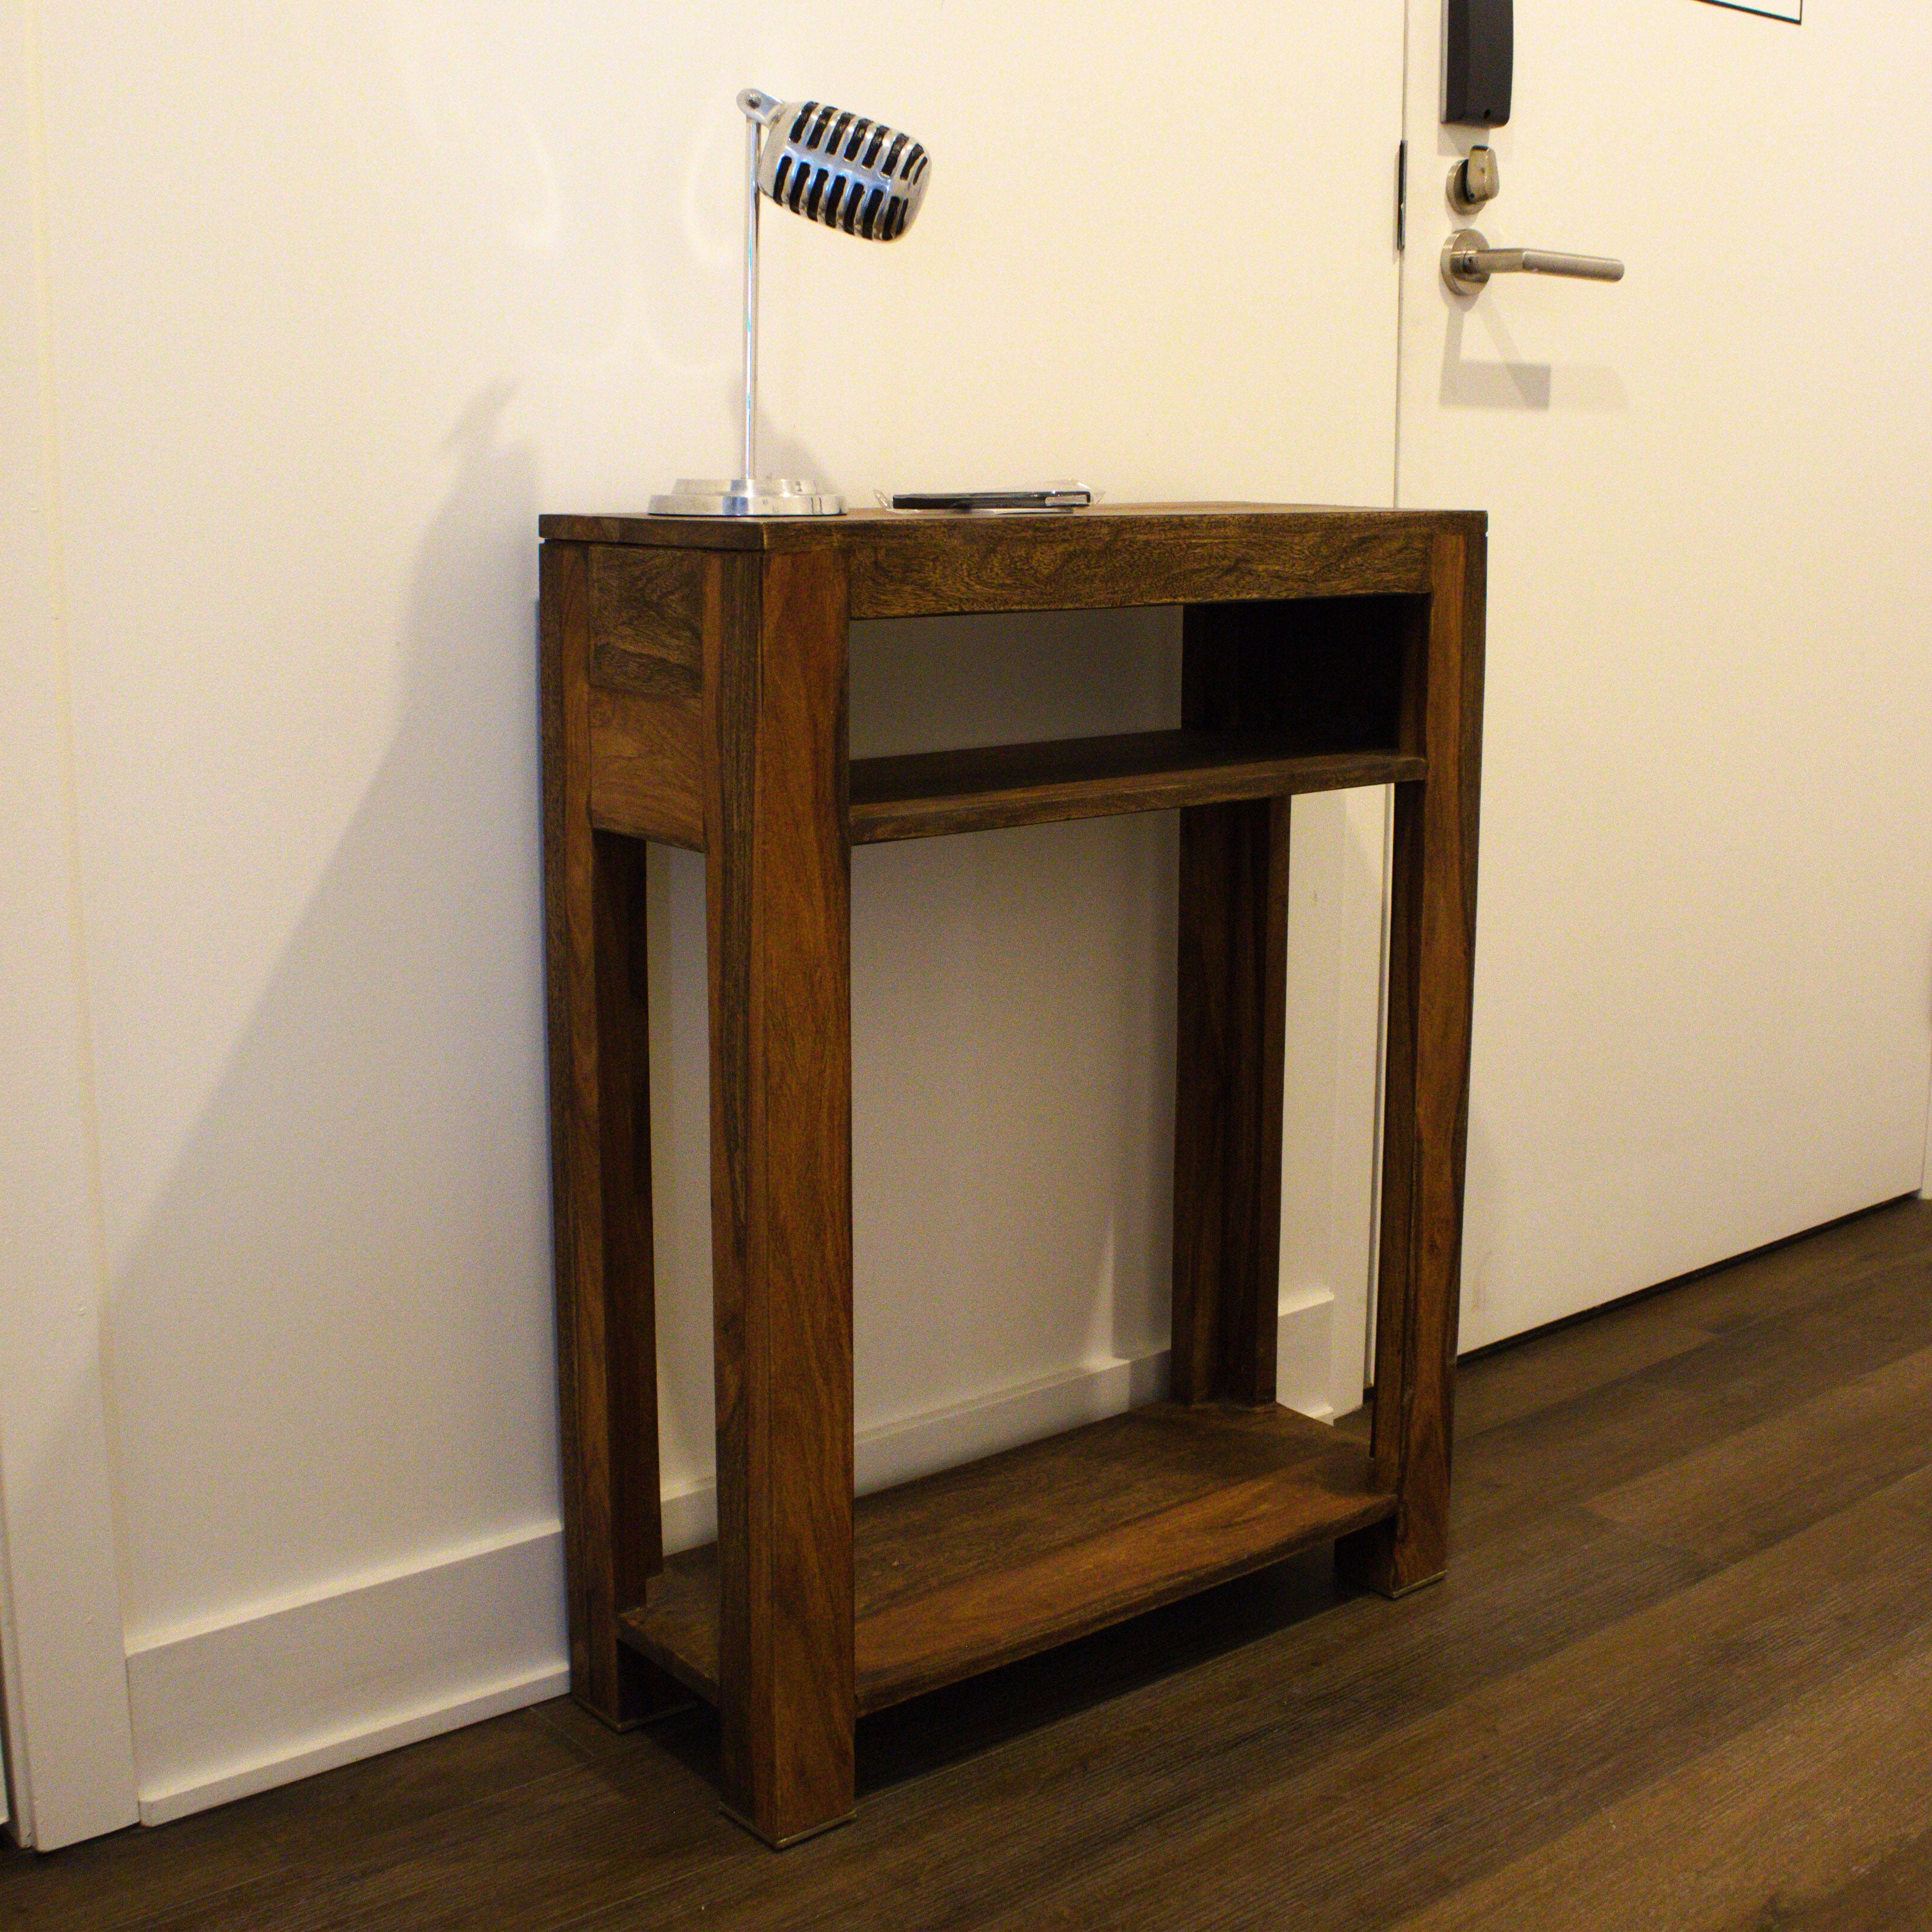 ZEN - Petite console en bois - Console en bois à 3 niveaux avec étagères de rangement ouvertes